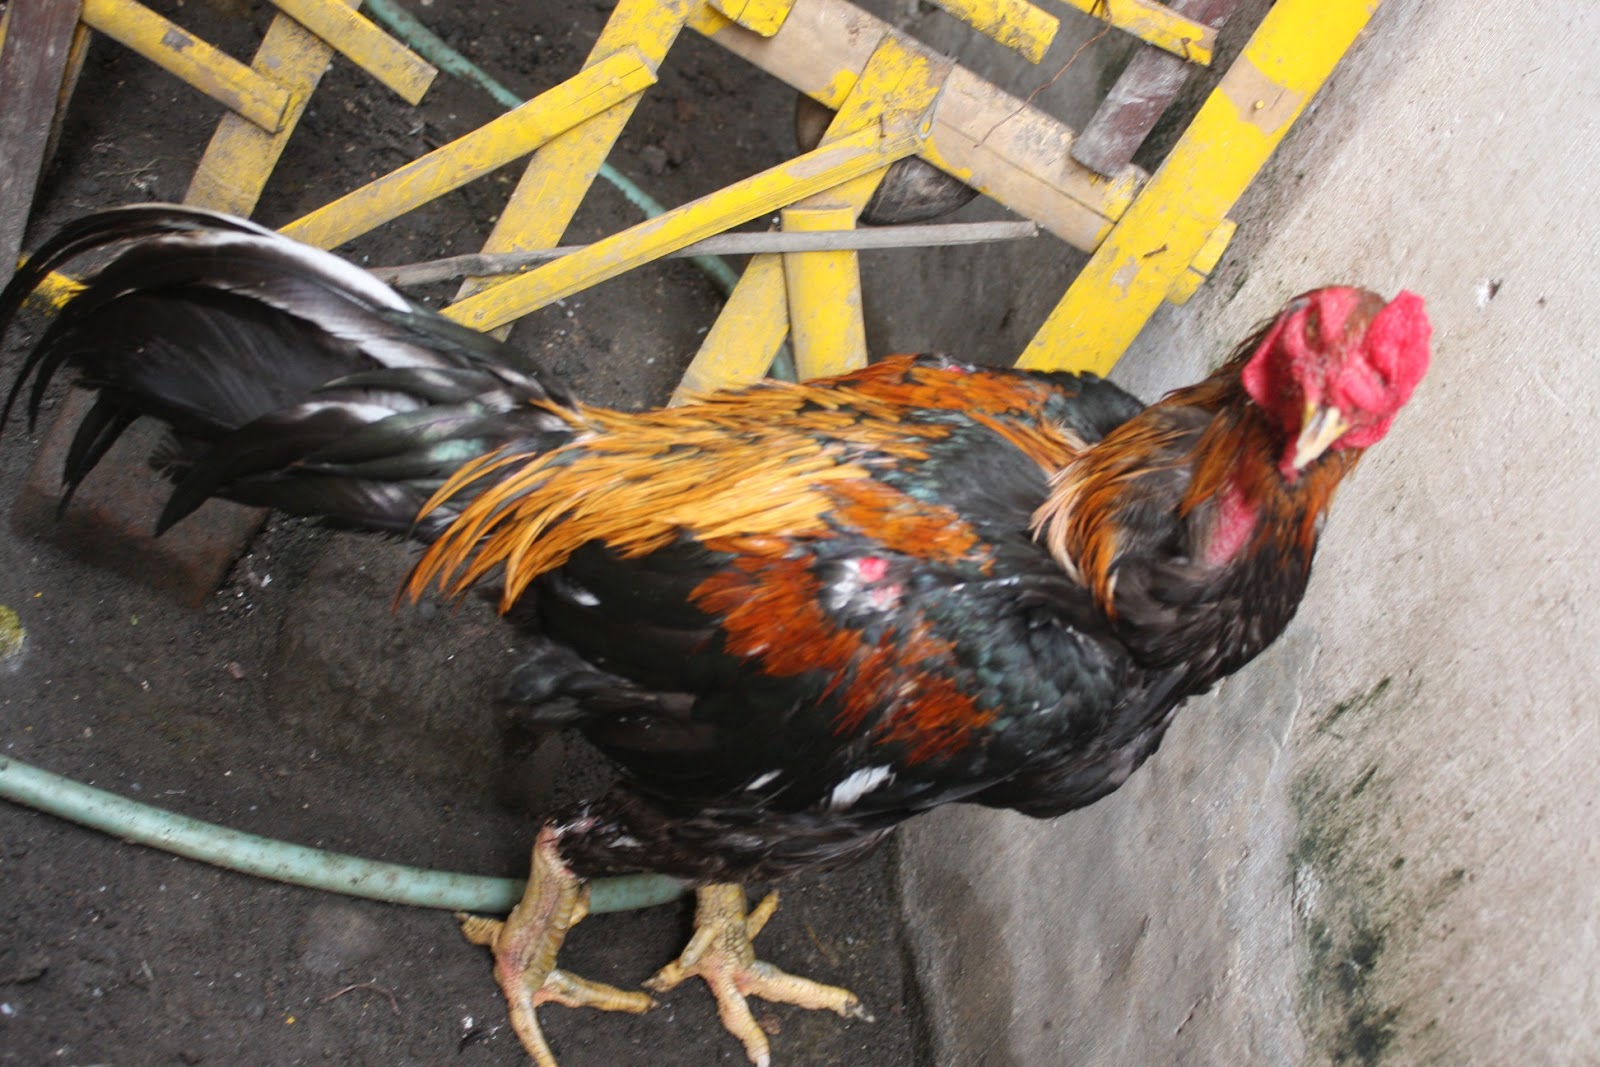  Ayam  Laga Ayam  Bangkok Aduan Jual Ayam  Pakan Obat obatan 